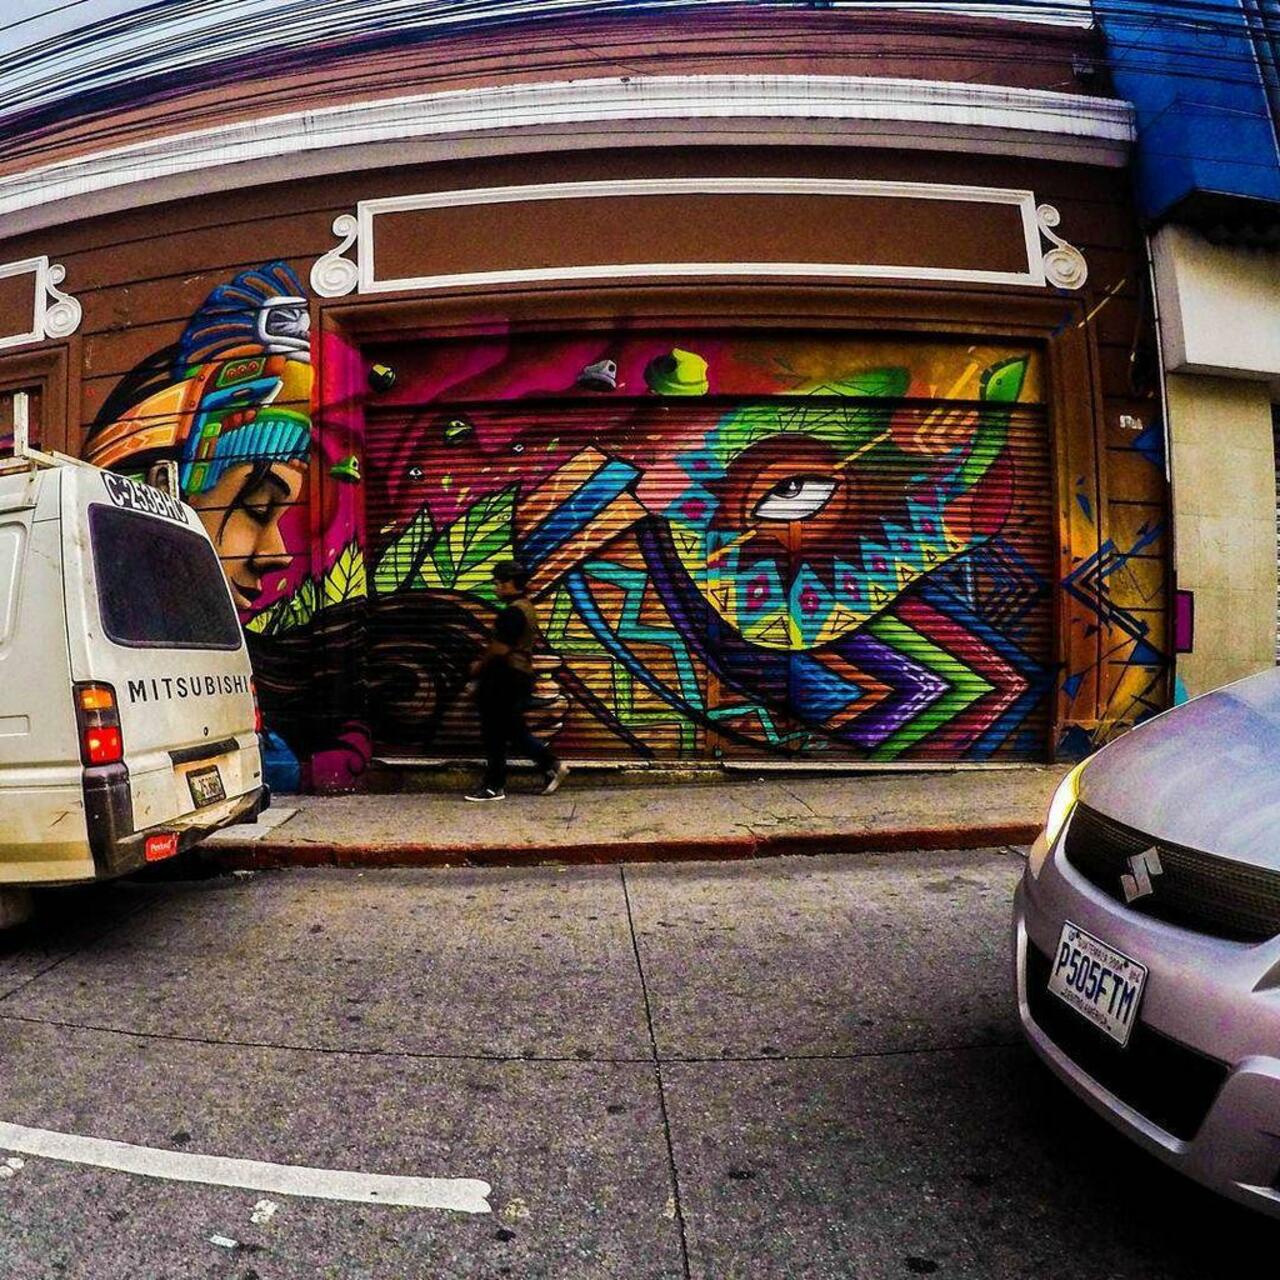 RT @IndieUndrground: via #pablovelasquez_l “http://ift.tt/1YI5wpr” #graffiti #streetart http://t.co/nZRPR7pjBG